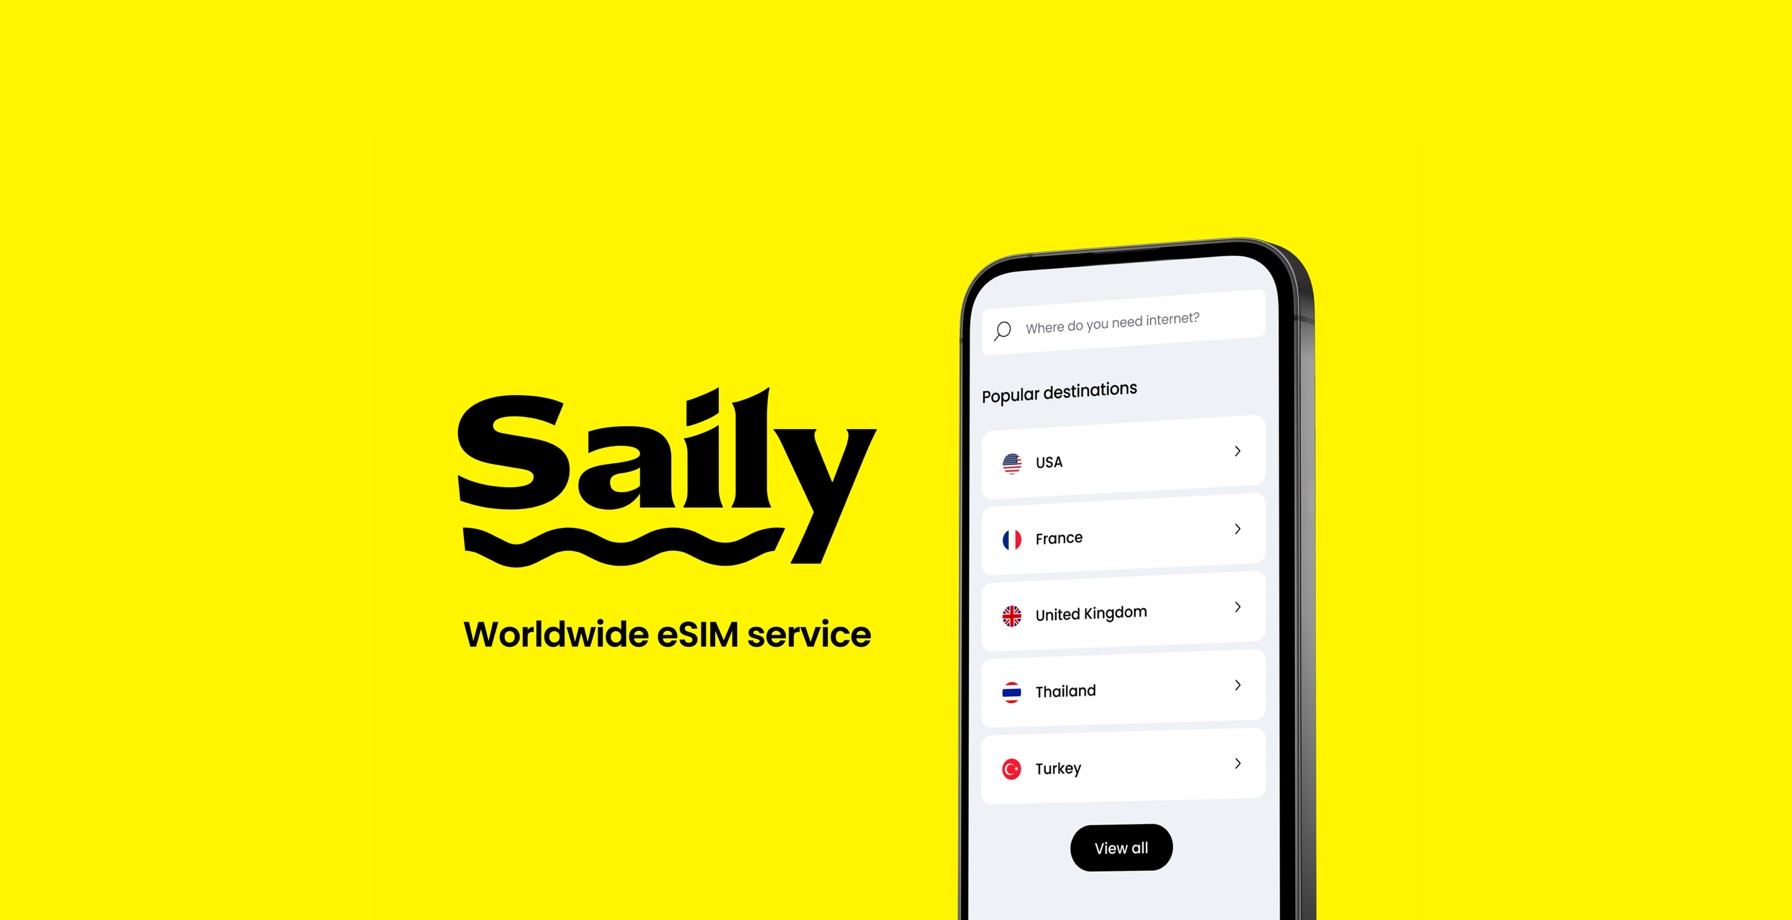 avec Saily, vous pouvez naviguer partout dans le monde